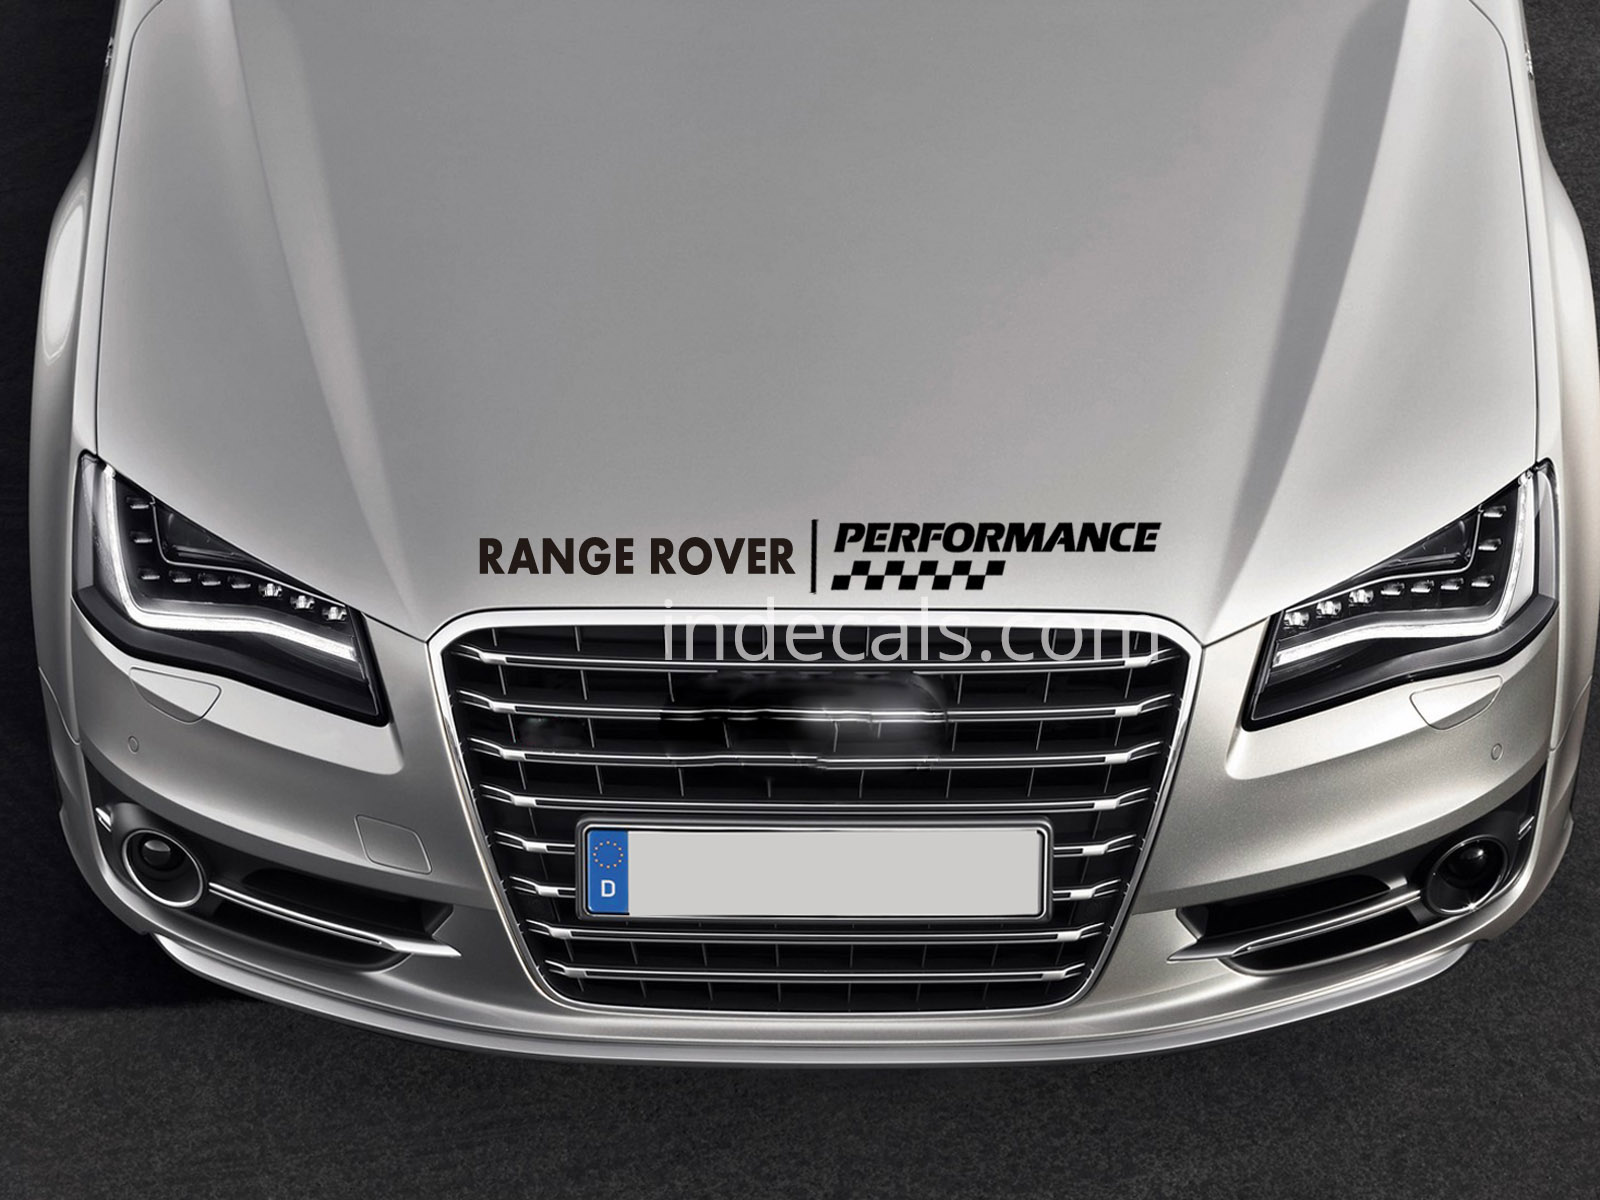 1 x Range Rover Performance Sticker for Bonnet - Black